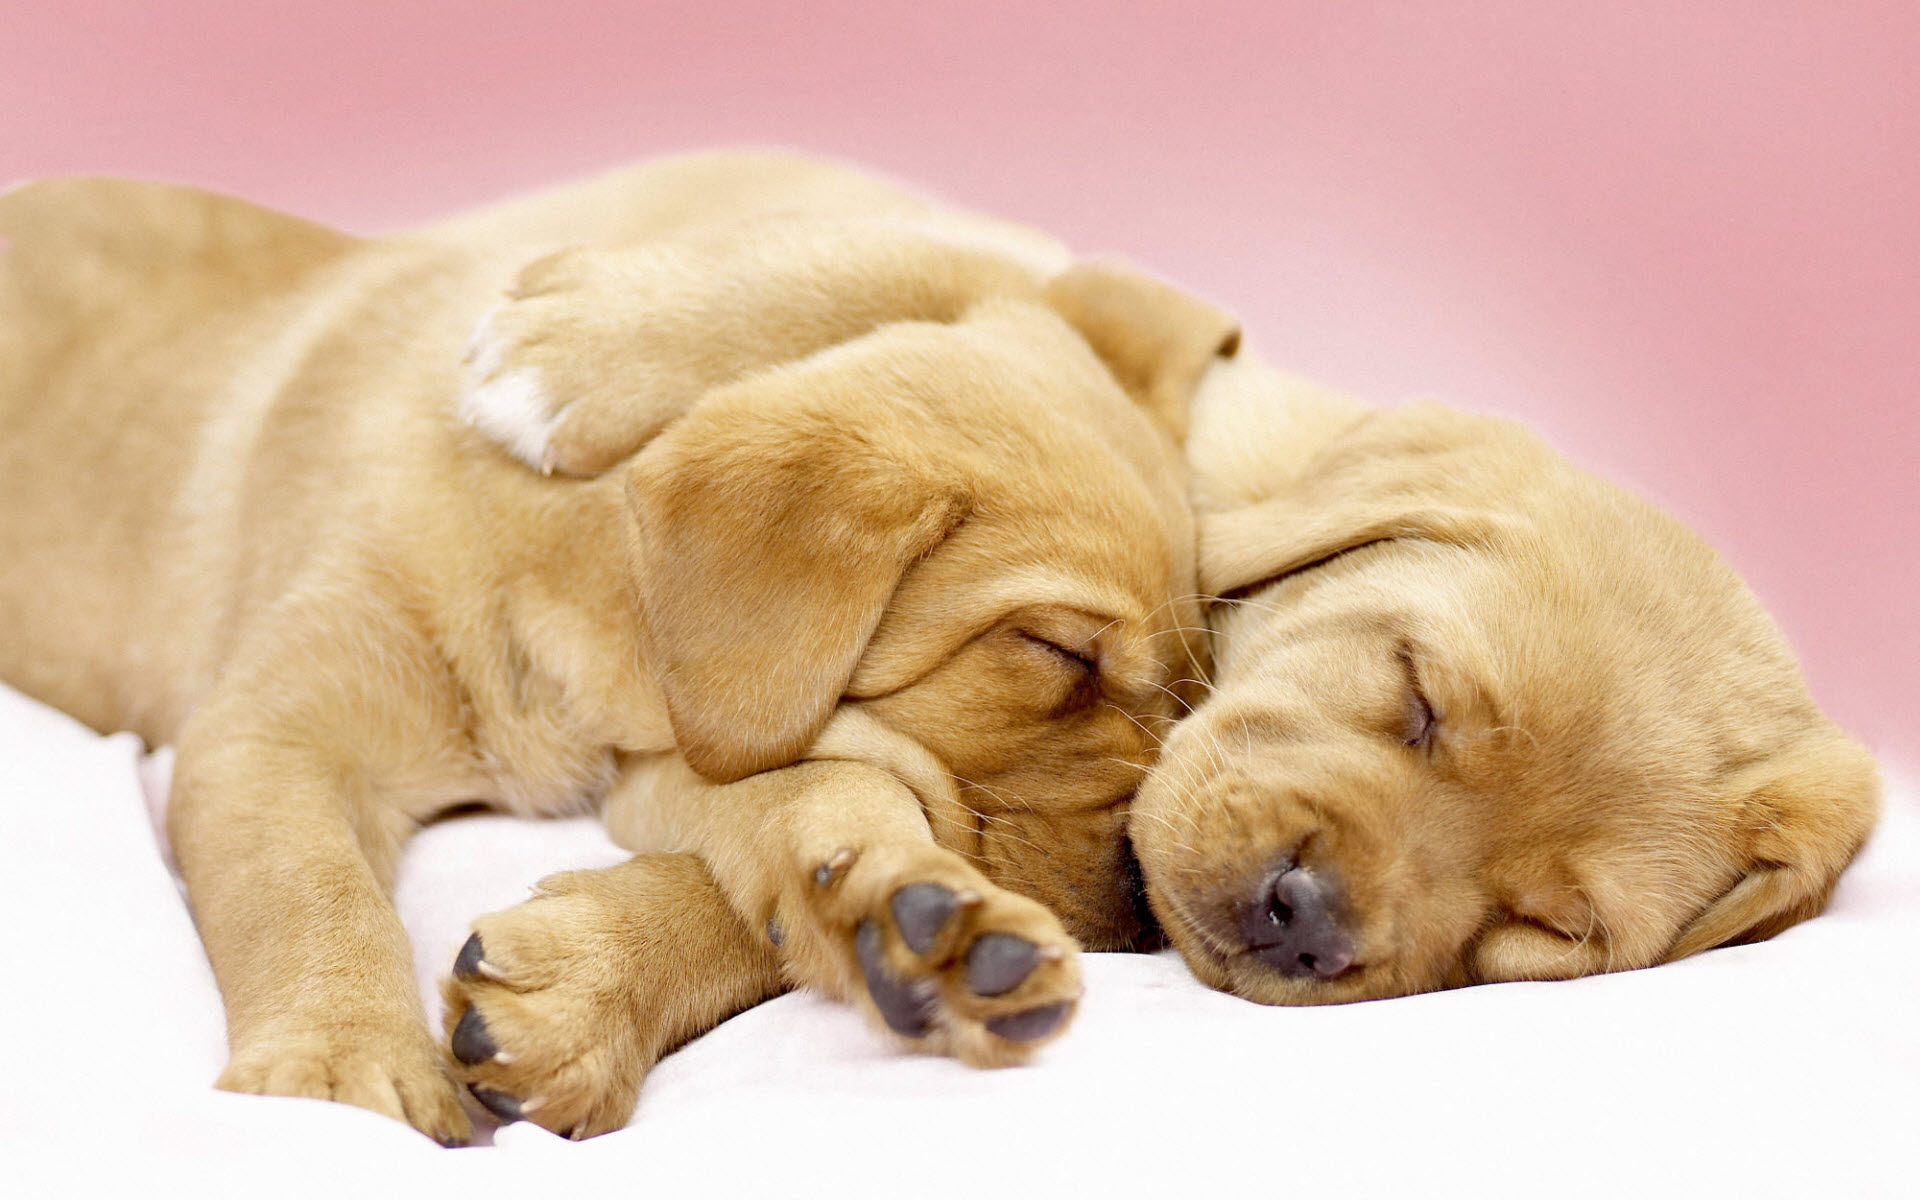 Canine Cuddles738855083 - Canine Cuddles - Cuddles, Canine